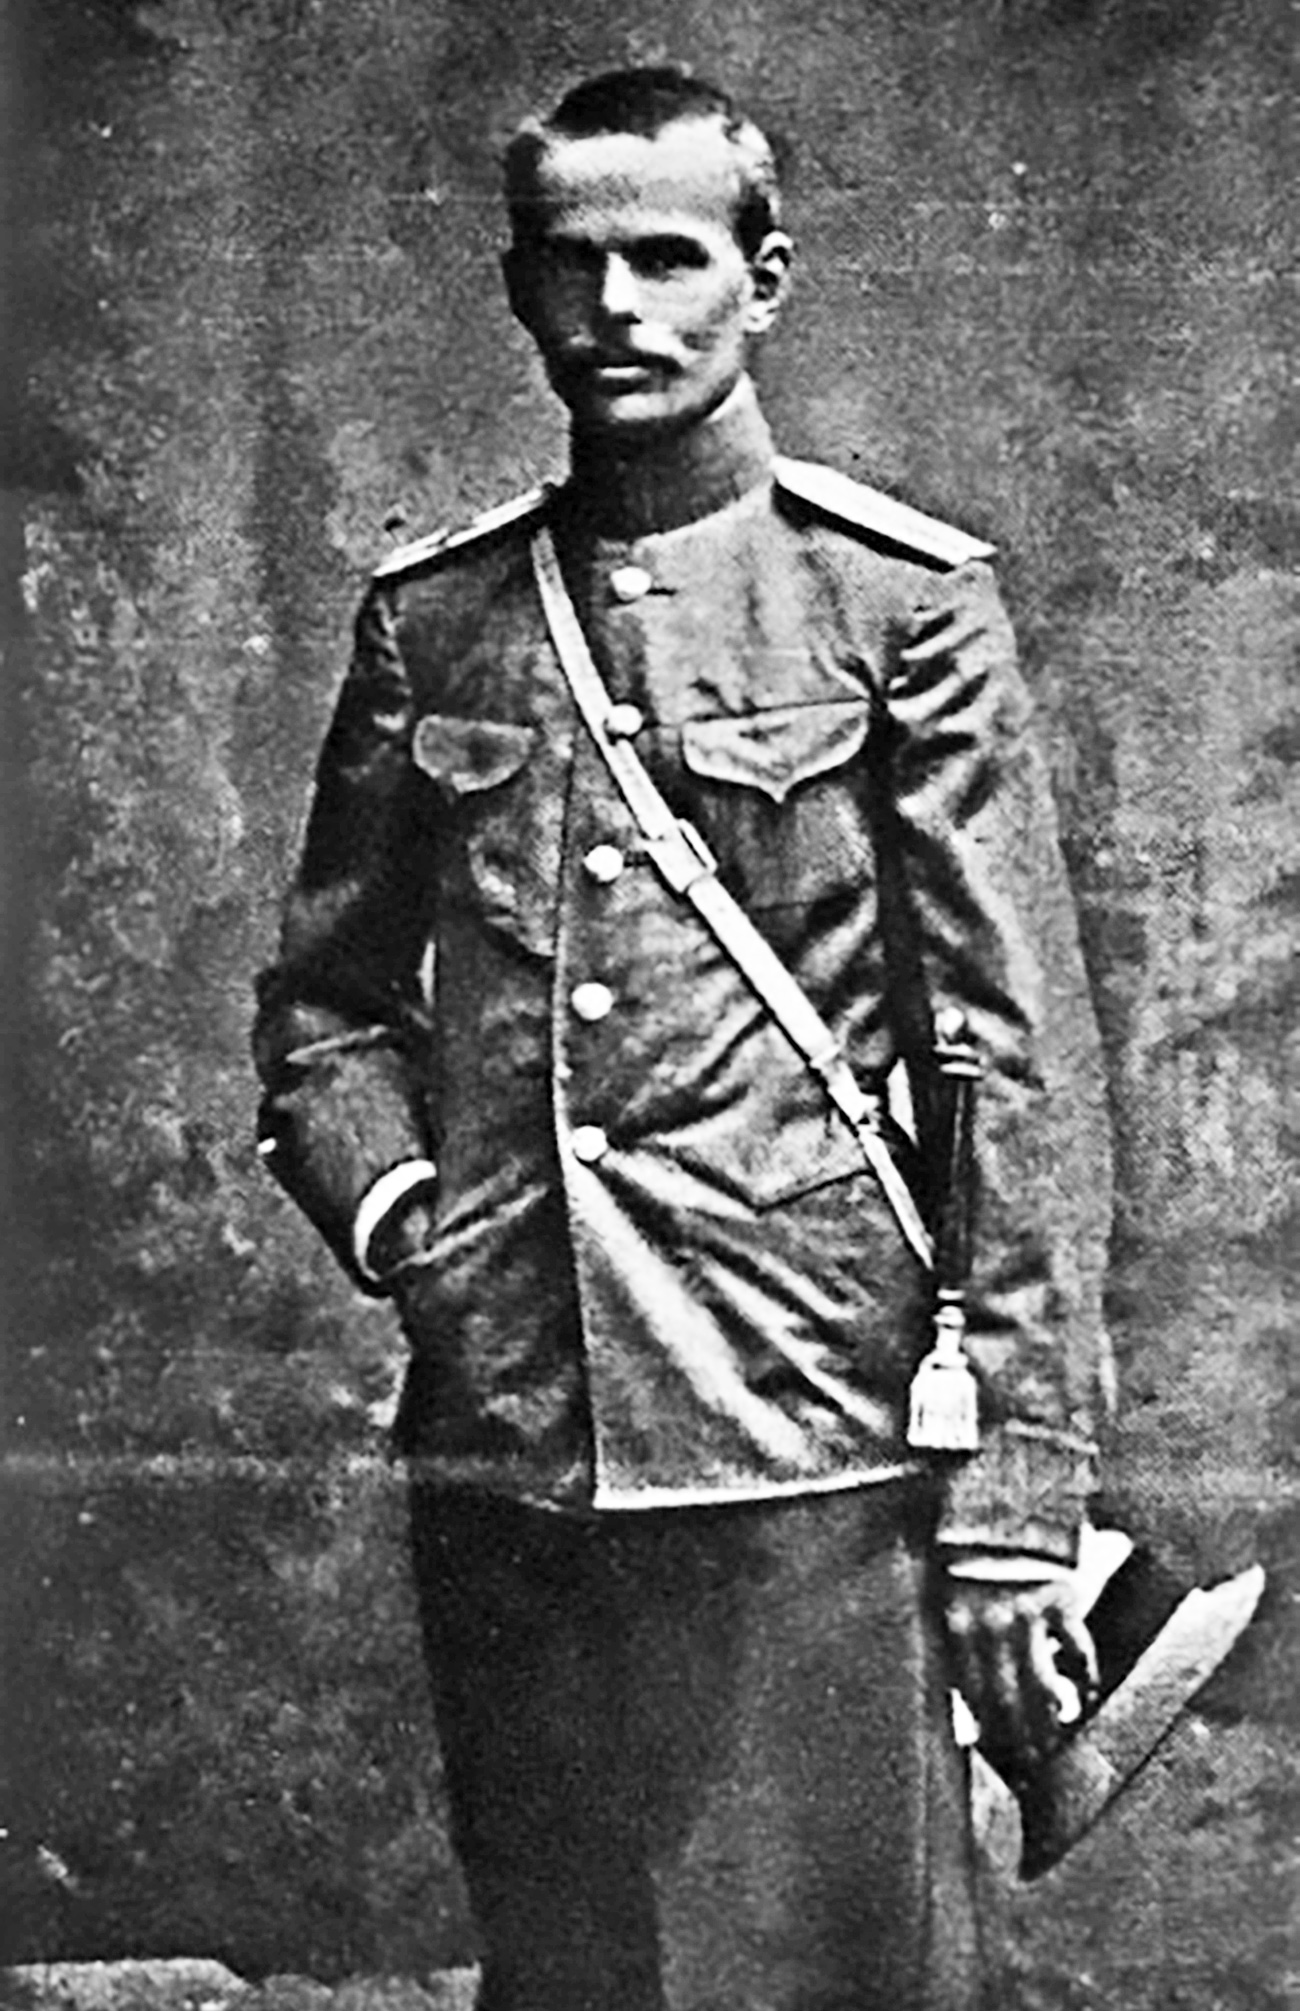 O Barão durante serviço militar na Primeira Guerra Mundial. Foto: Arquivo